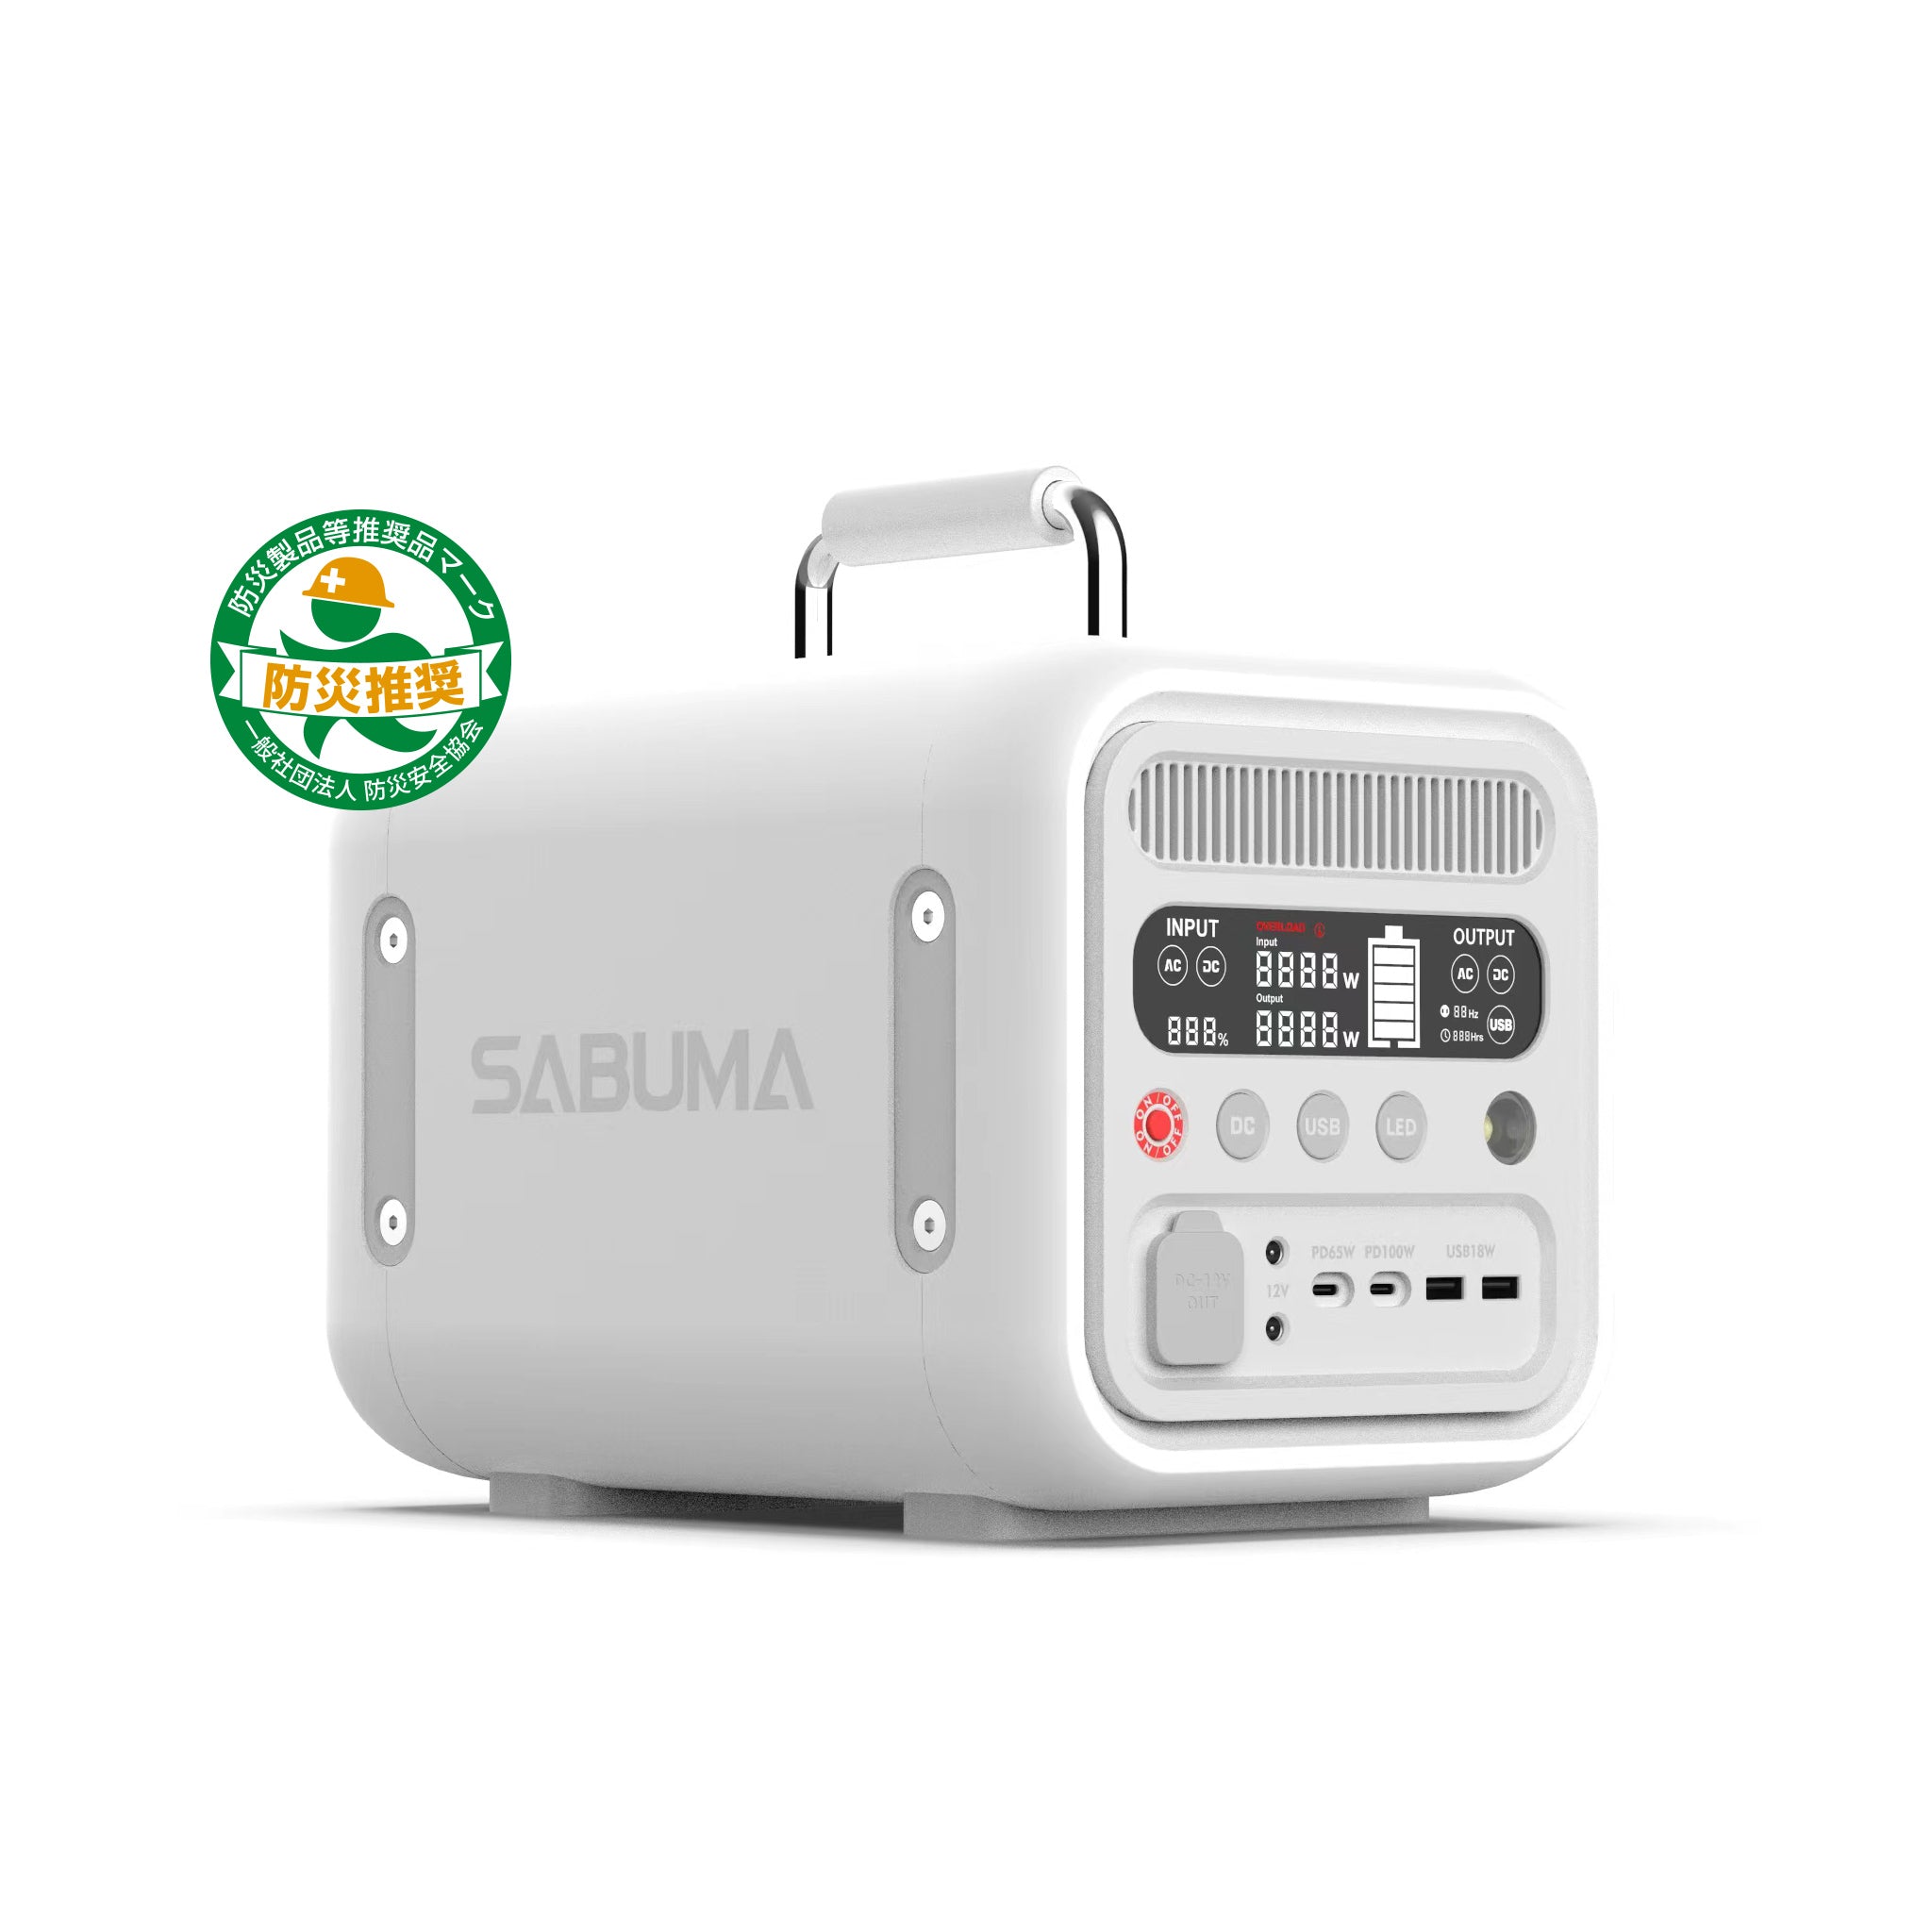 【新商品】SABUMA ポータブル電源 S600 – SABUMA公式ストア